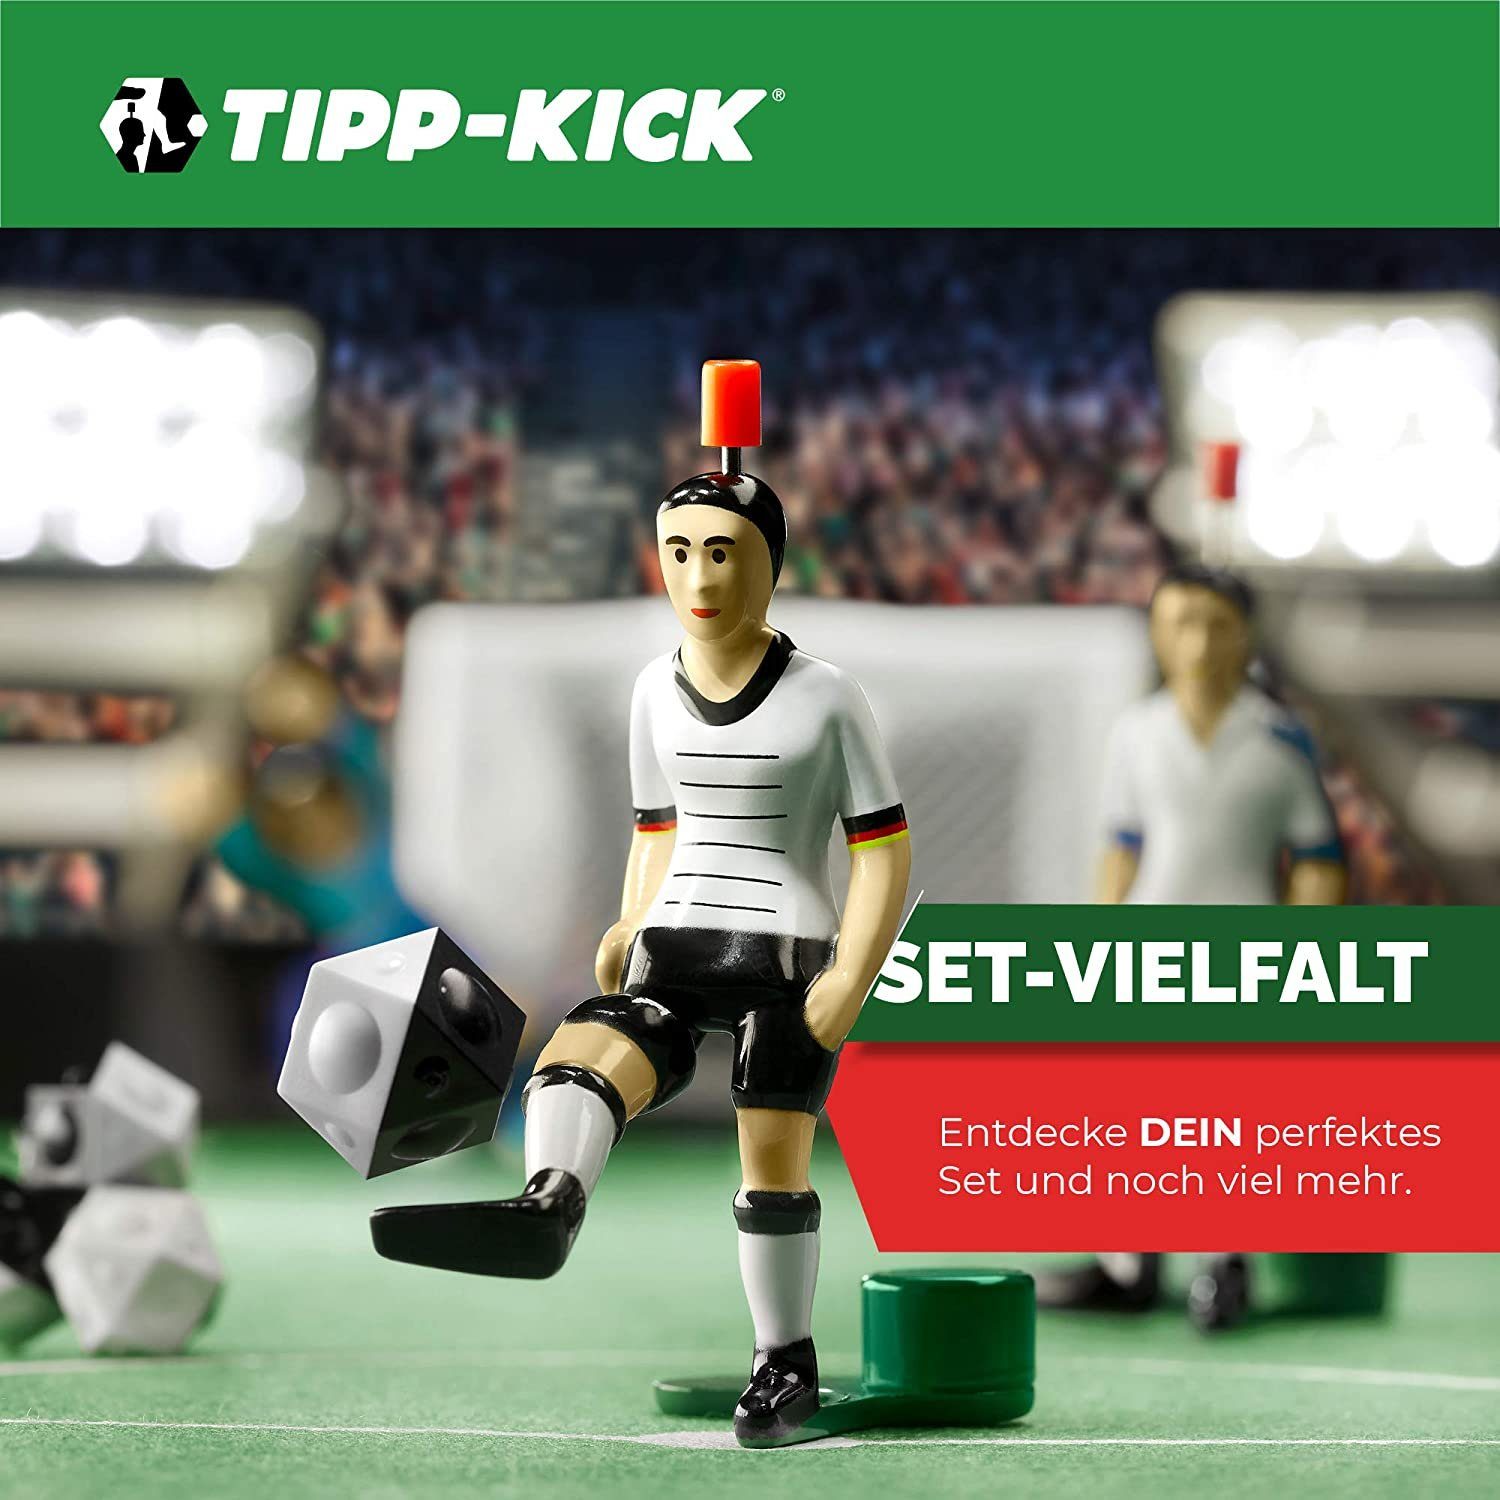 SPANIEN Star Tischfußballspiel Kick Figur Spielfigur Tip Spieler Innenrist Kicker Tipp-Kick